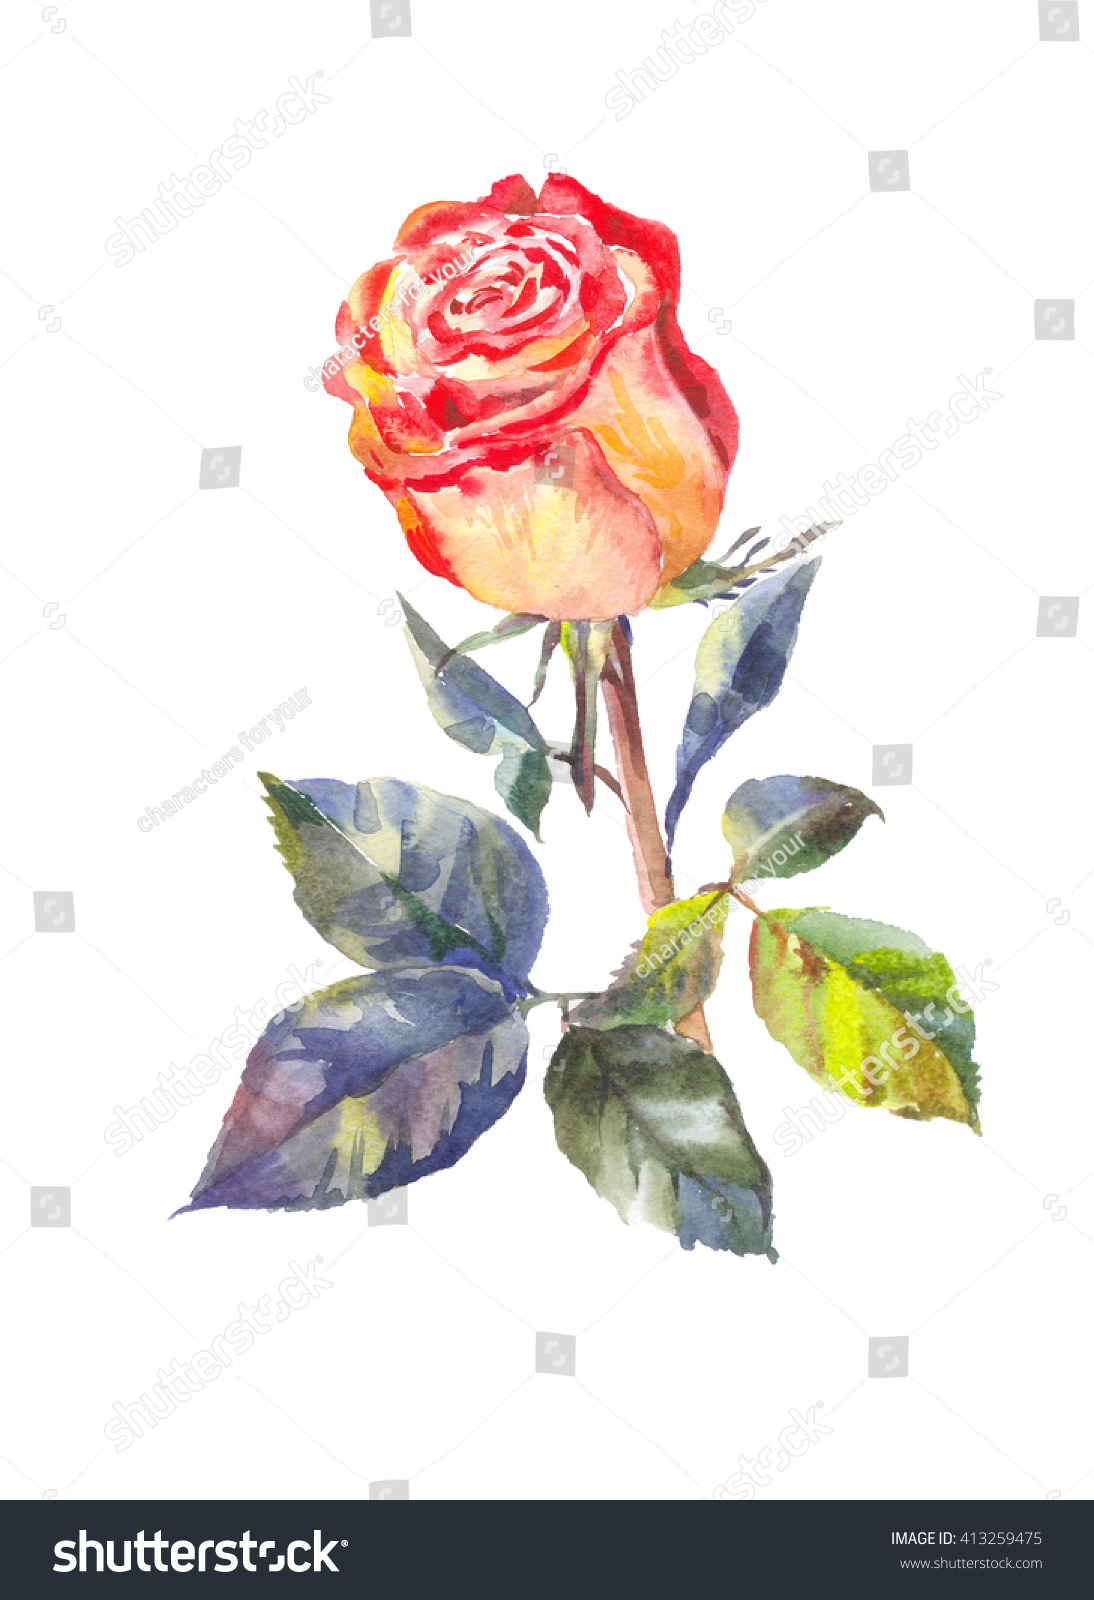 Handdrawn Garden Rose On White Background Stock Illustration 413259475 ...